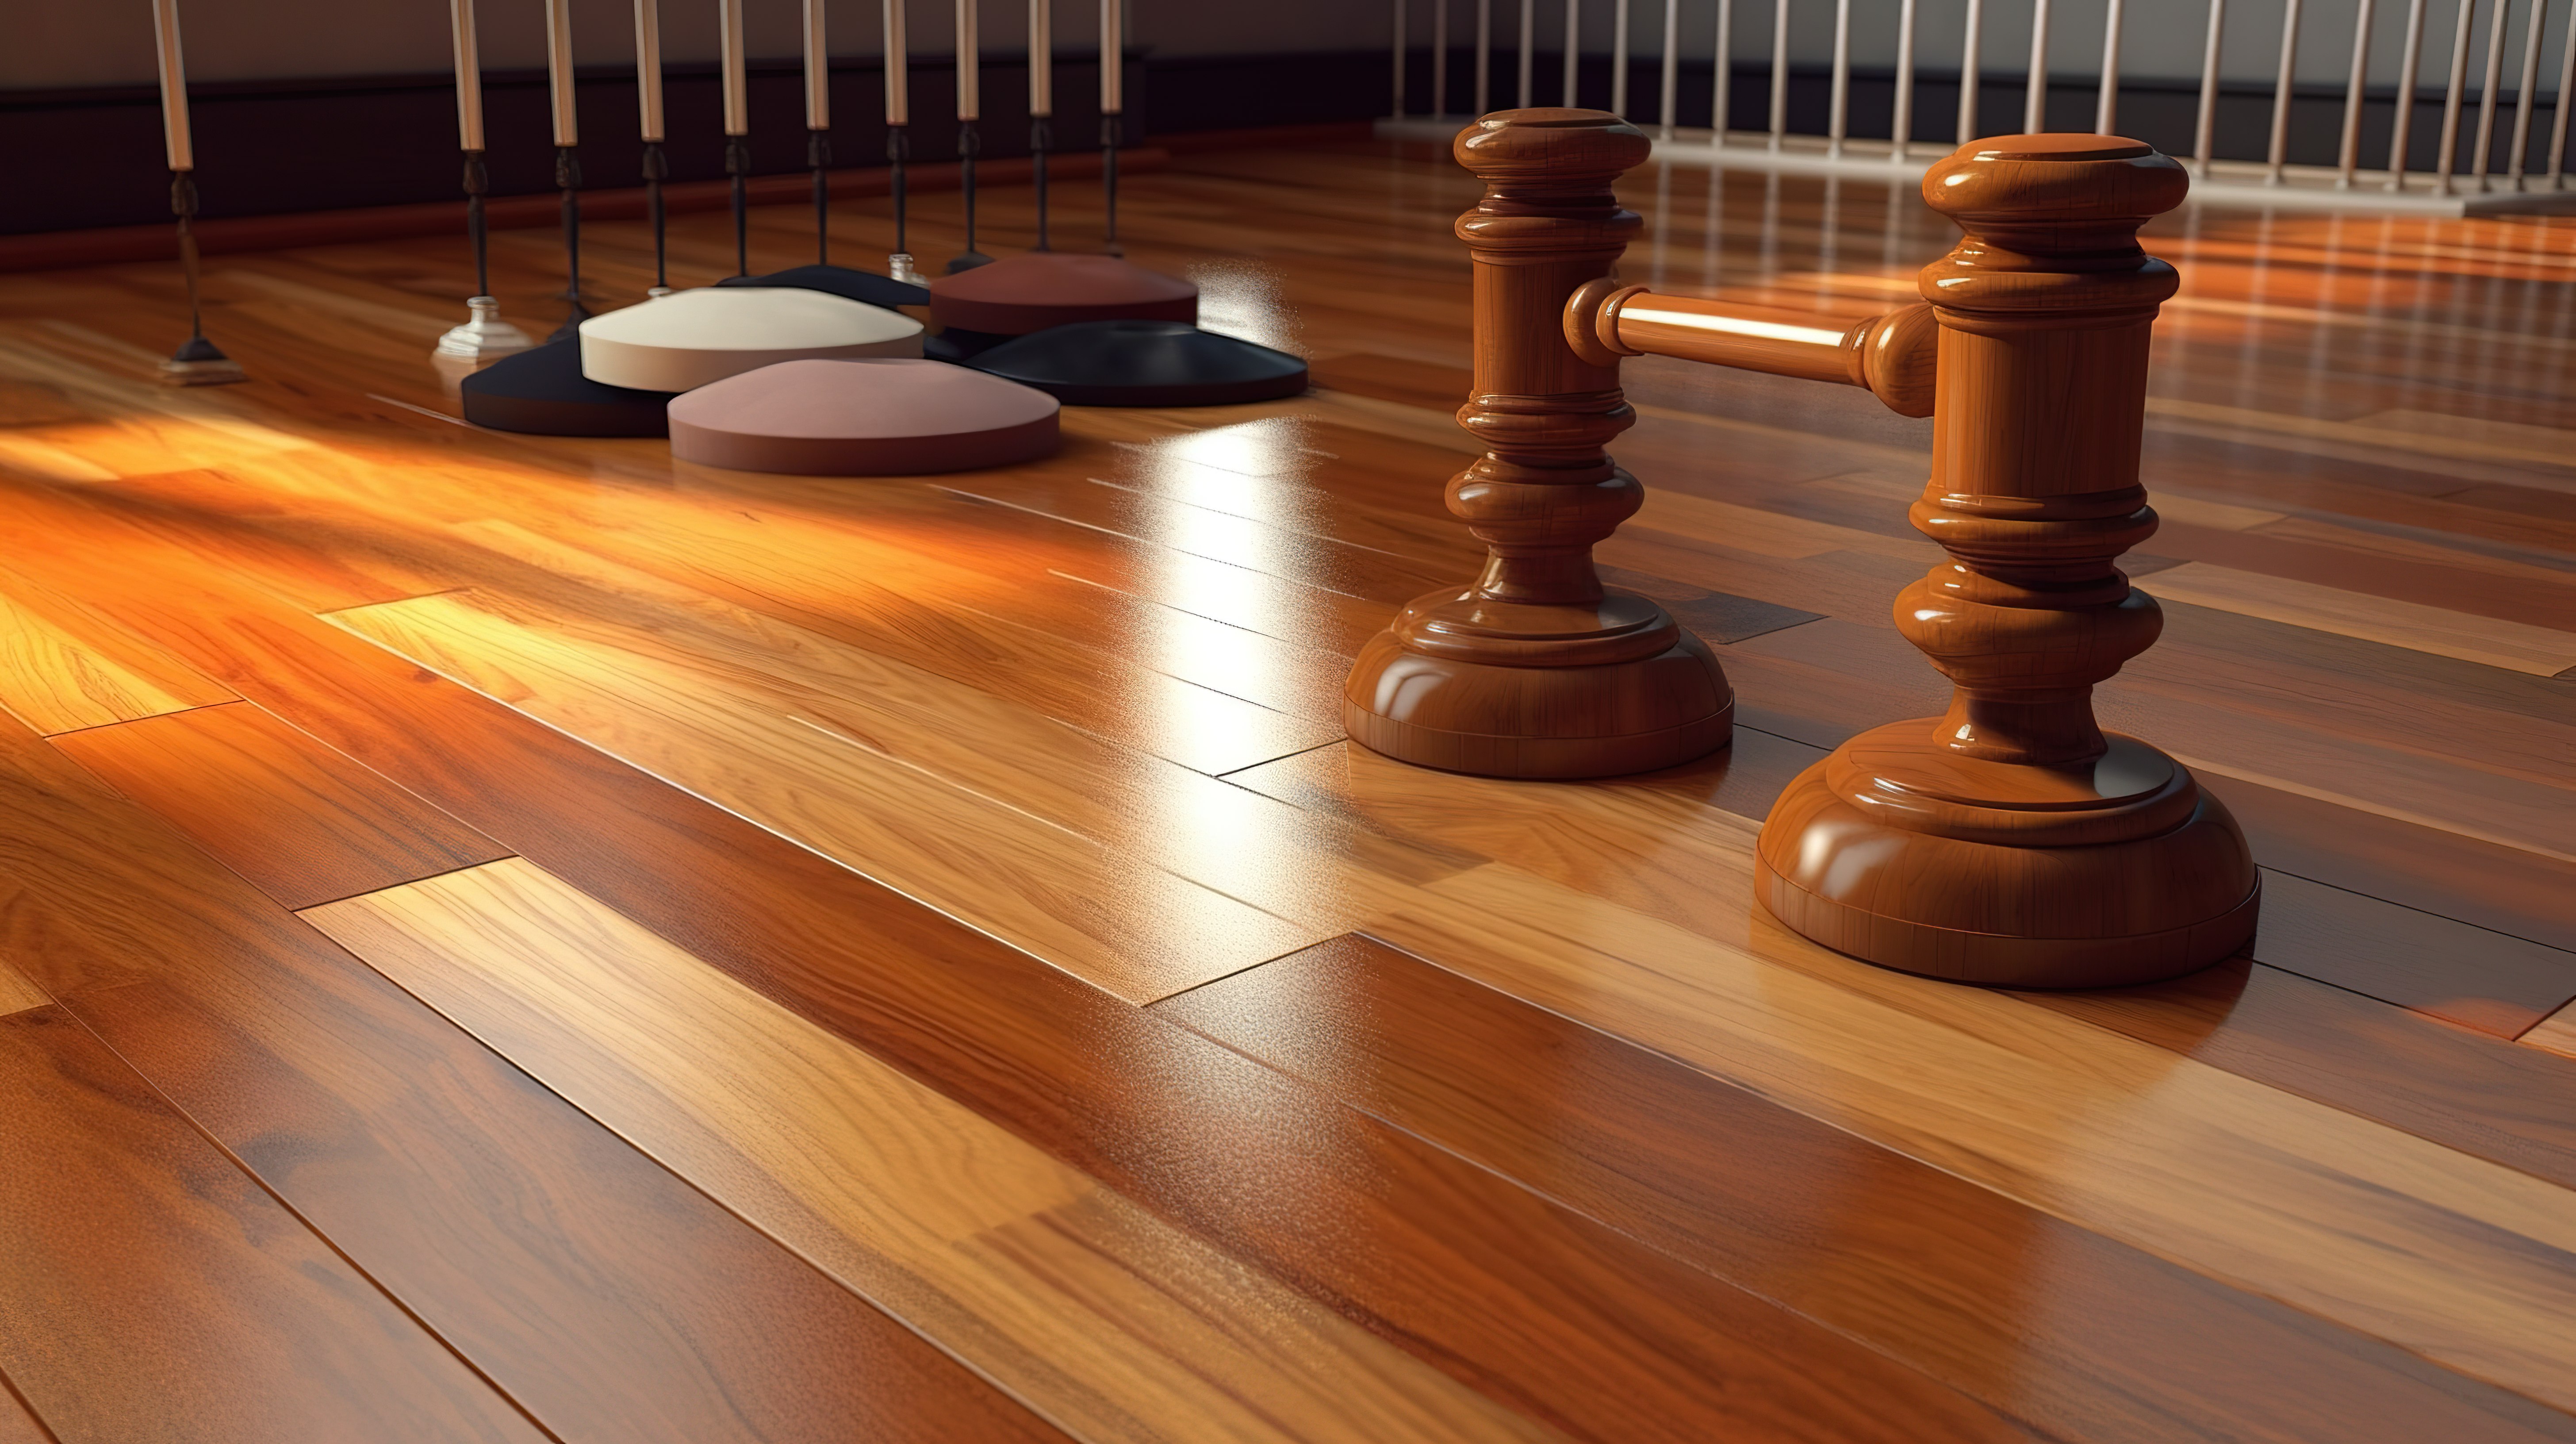 镶木地板和法官木槌的 3D 渲染图片